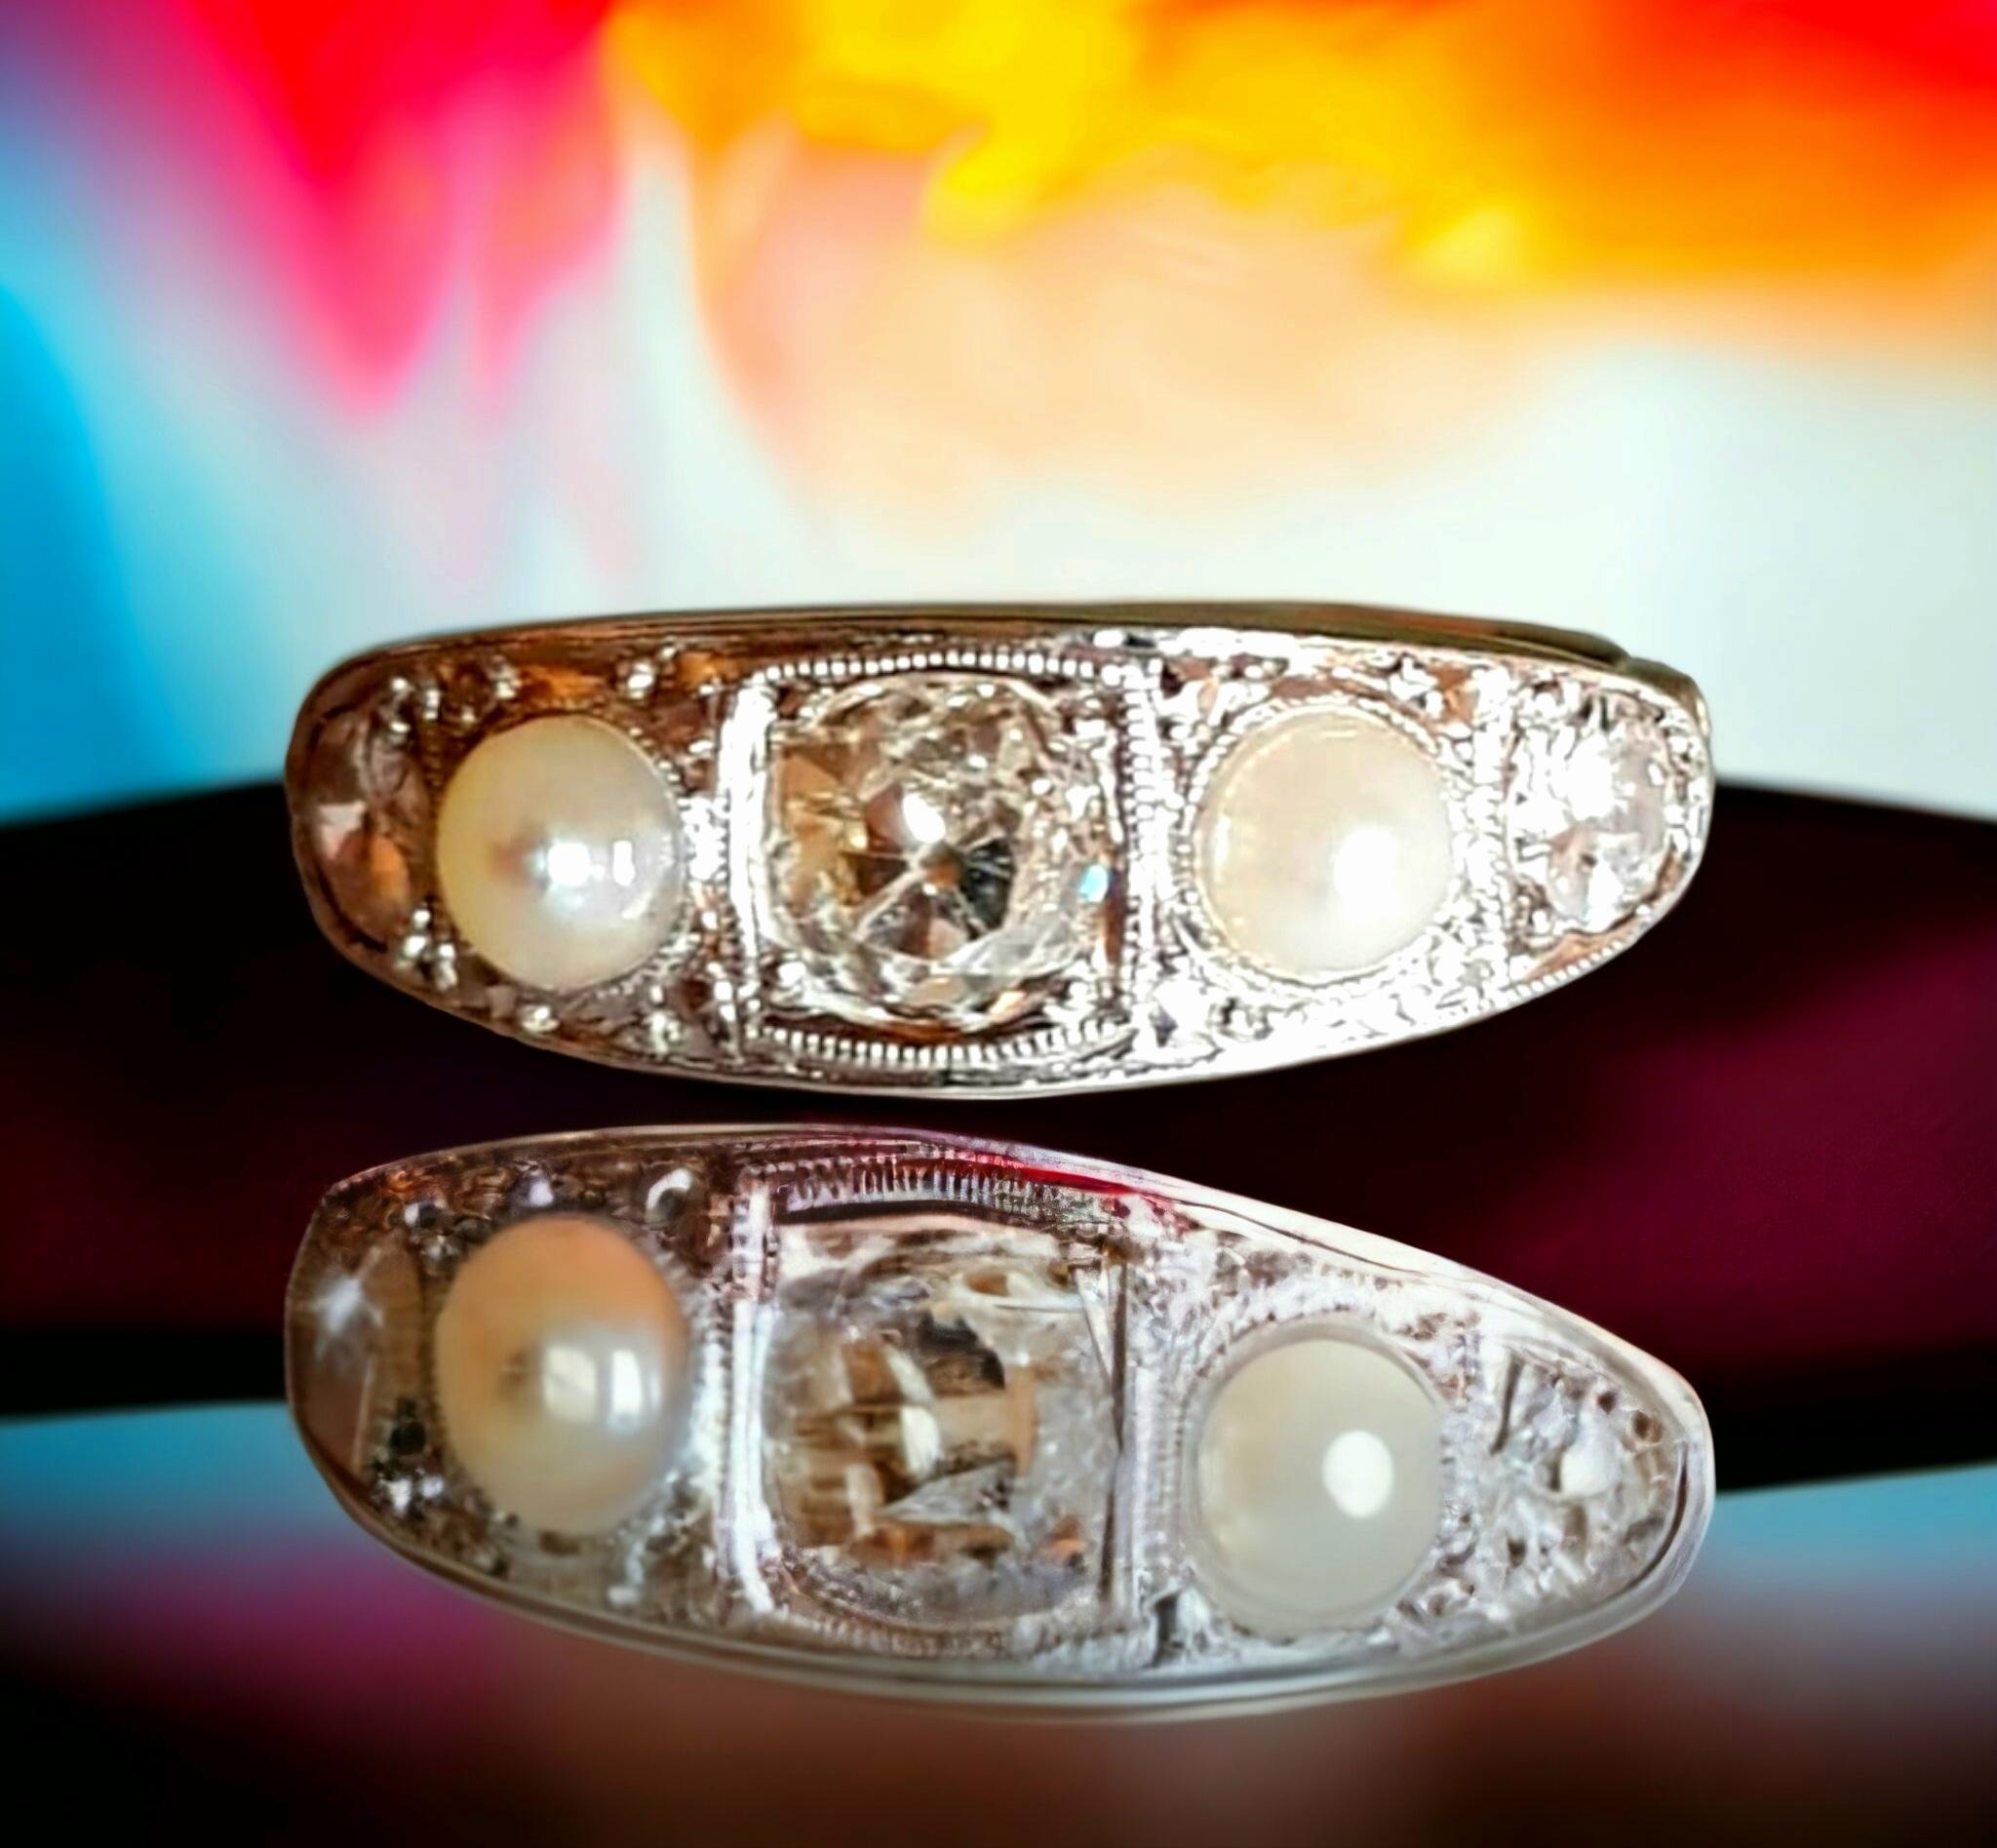 Original Edwardian Diamond and Pearl Five Stone Band Ring in 18K Gold and Platinum (1901-1915)

La Nature a été sertie de trois diamants gradués de taille ancienne d'un poids total d'environ plus d'un demi carat et de deux perles naturelles. Les